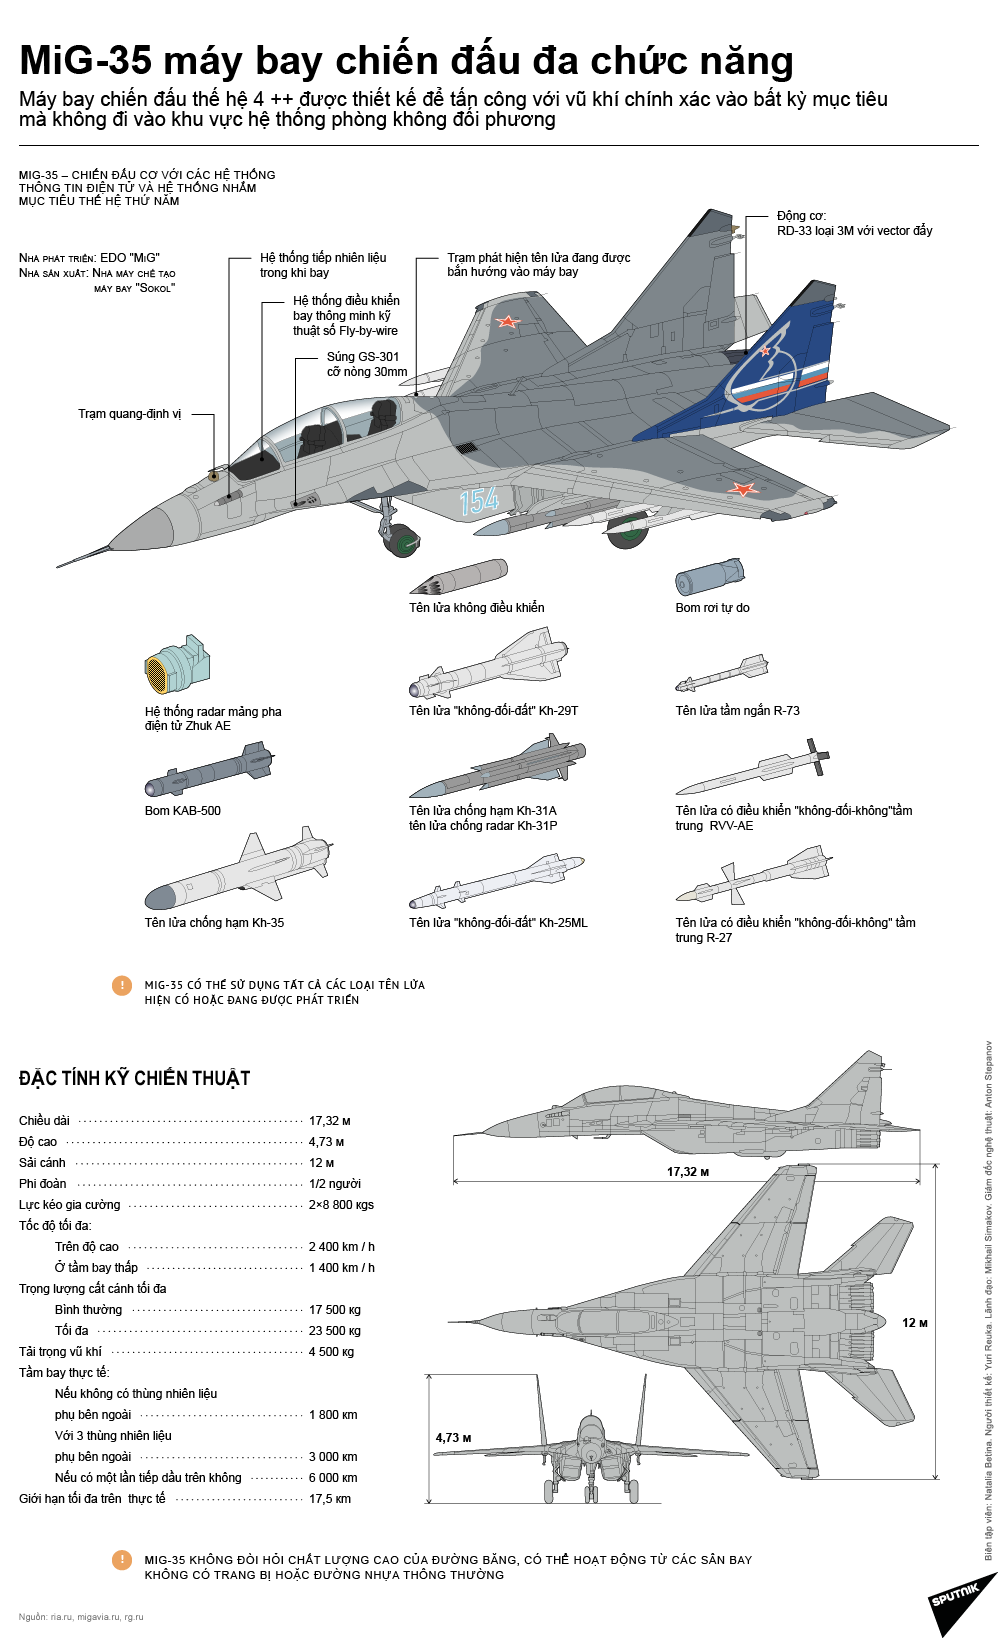 MiG-35 máy bay chiến đấu  đa chức năng - Sputnik Việt Nam